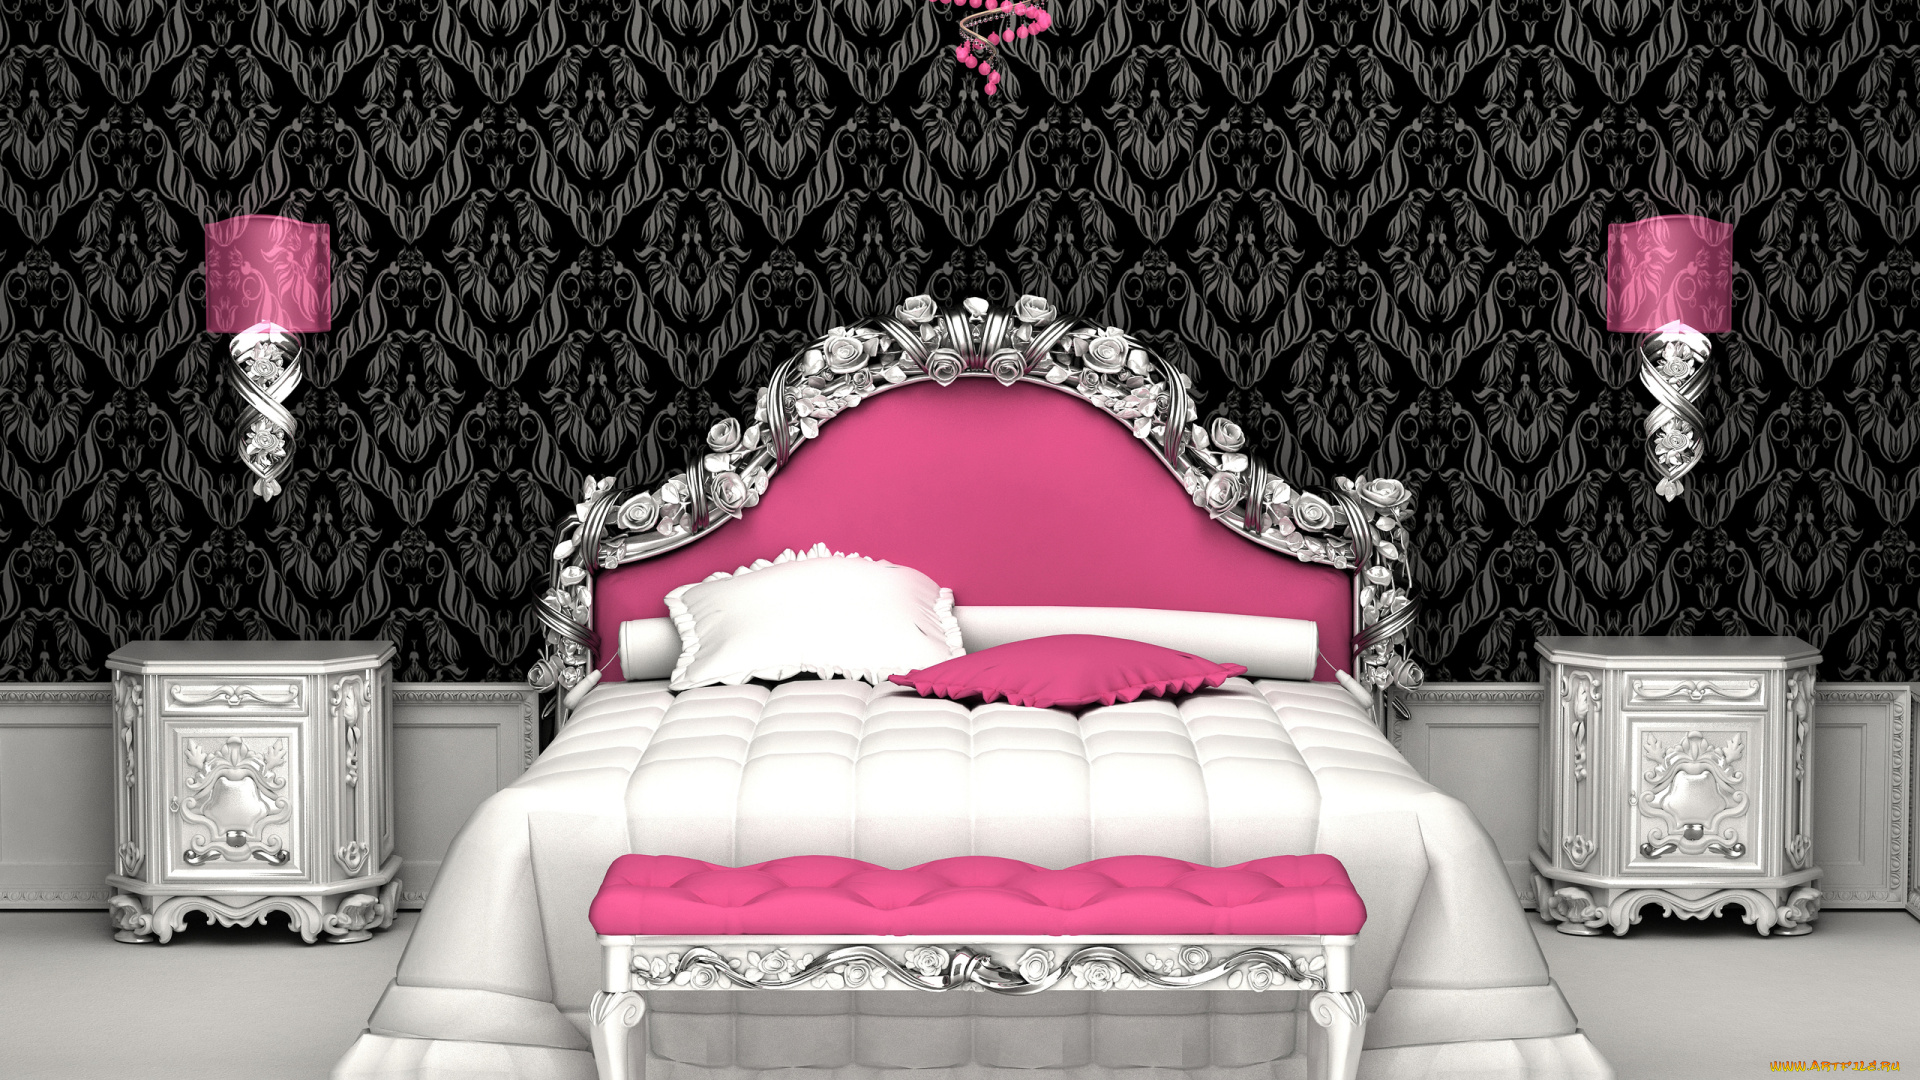 3д, графика, realism, реализм, розовый, кровать, комната